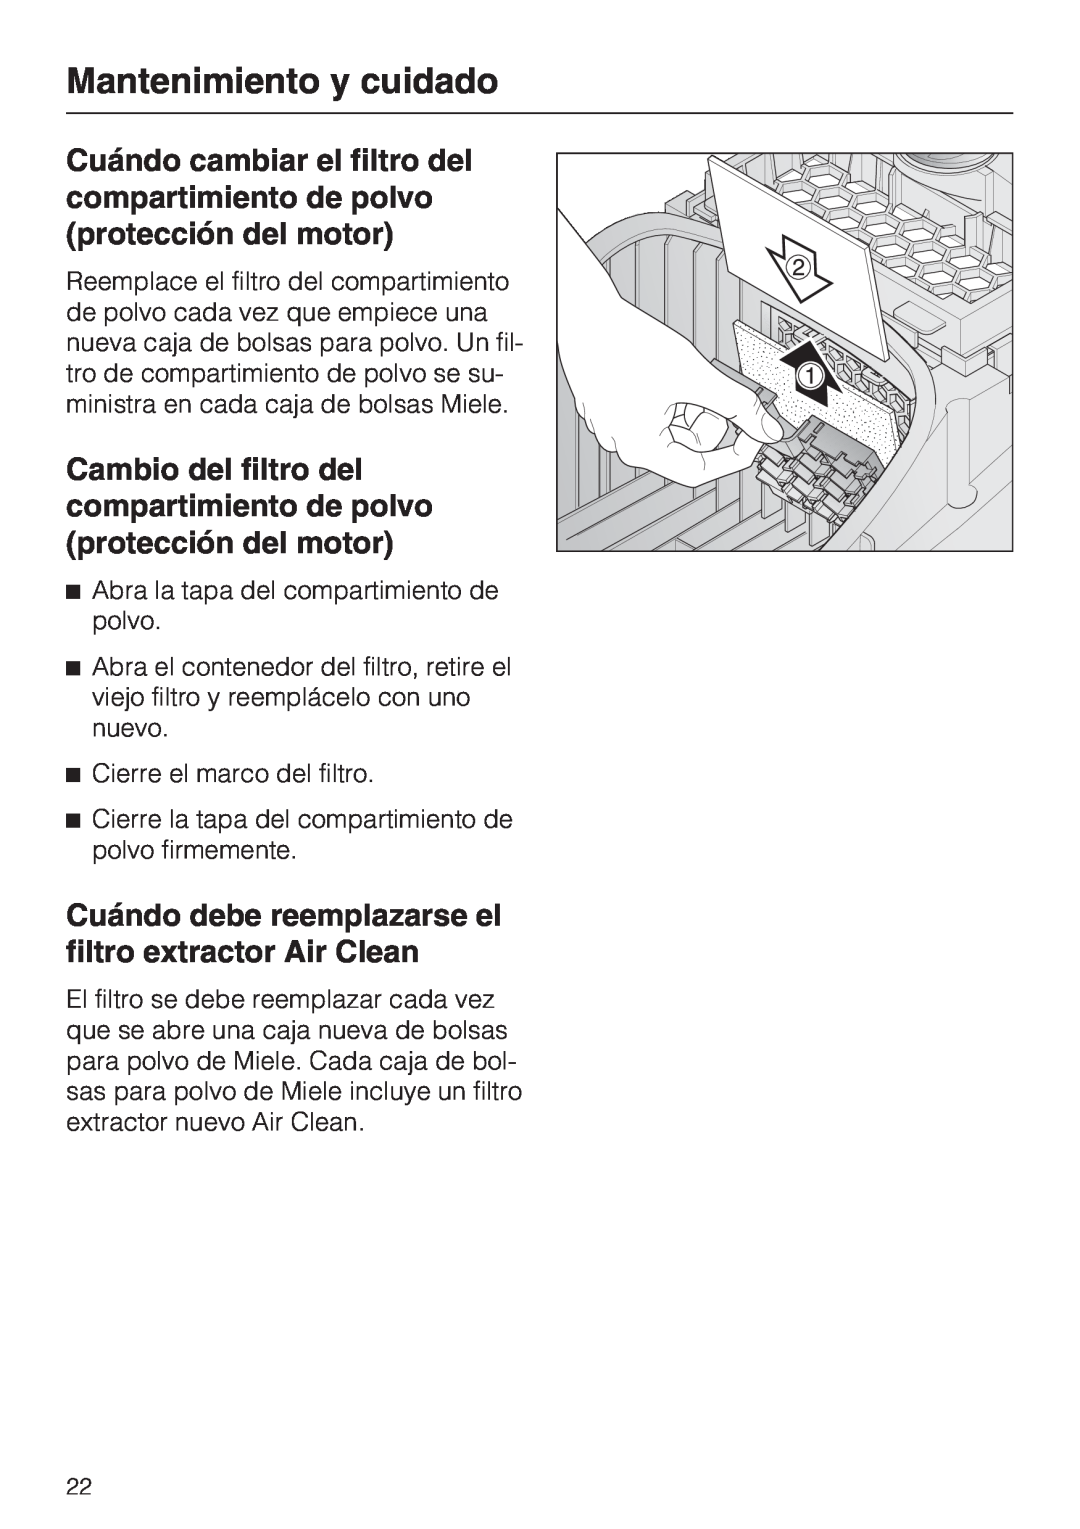 Miele S 2000 operating instructions Mantenimiento y cuidado, Abra la tapa del compartimiento de polvo 